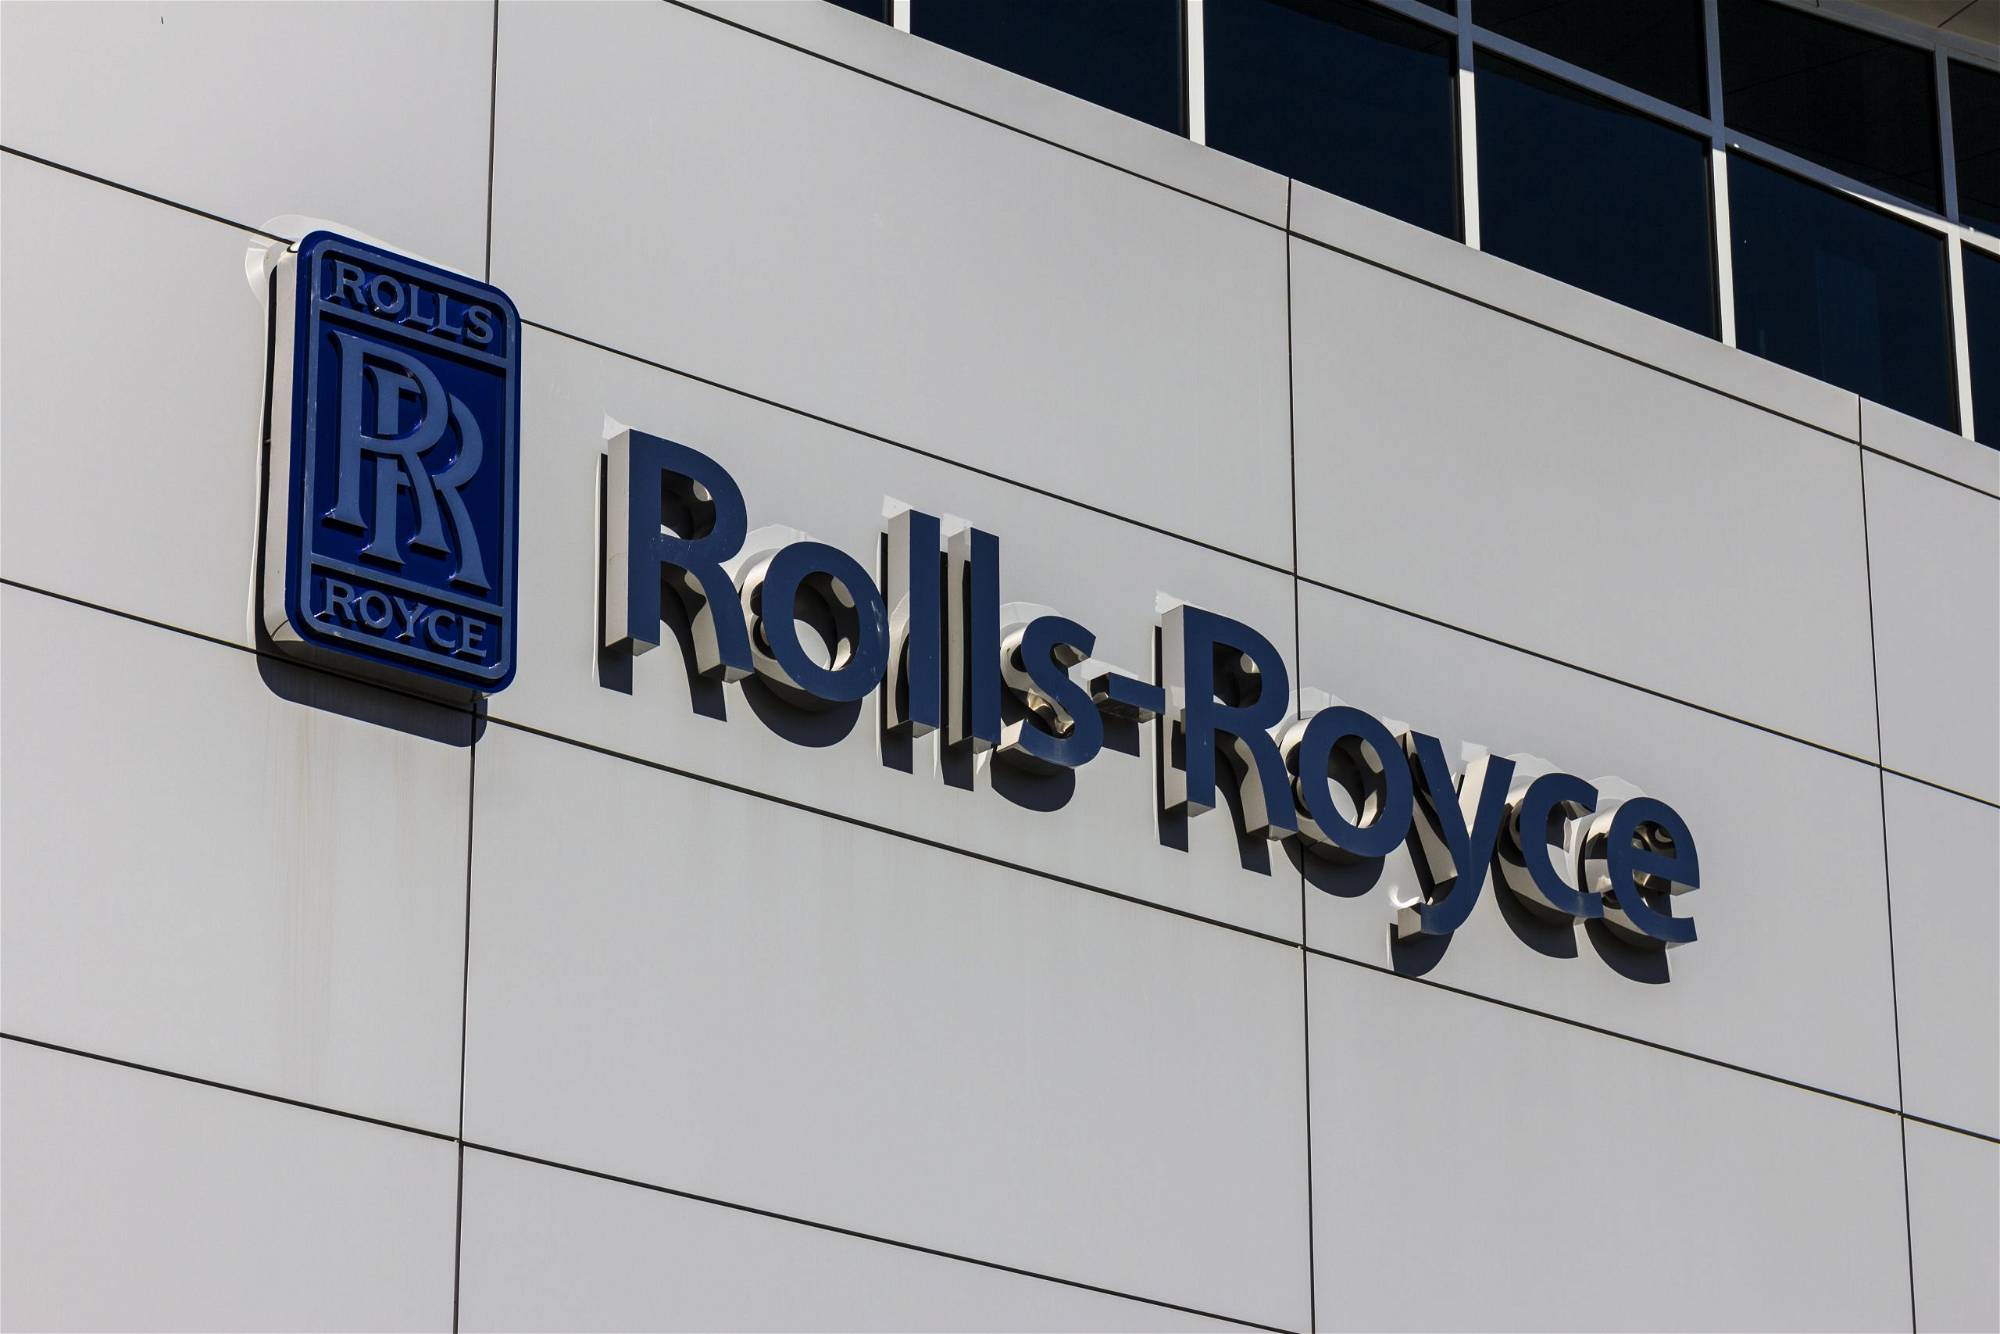 Rolls Royce-Aktie: Sollten Sie jetzt kaufen?